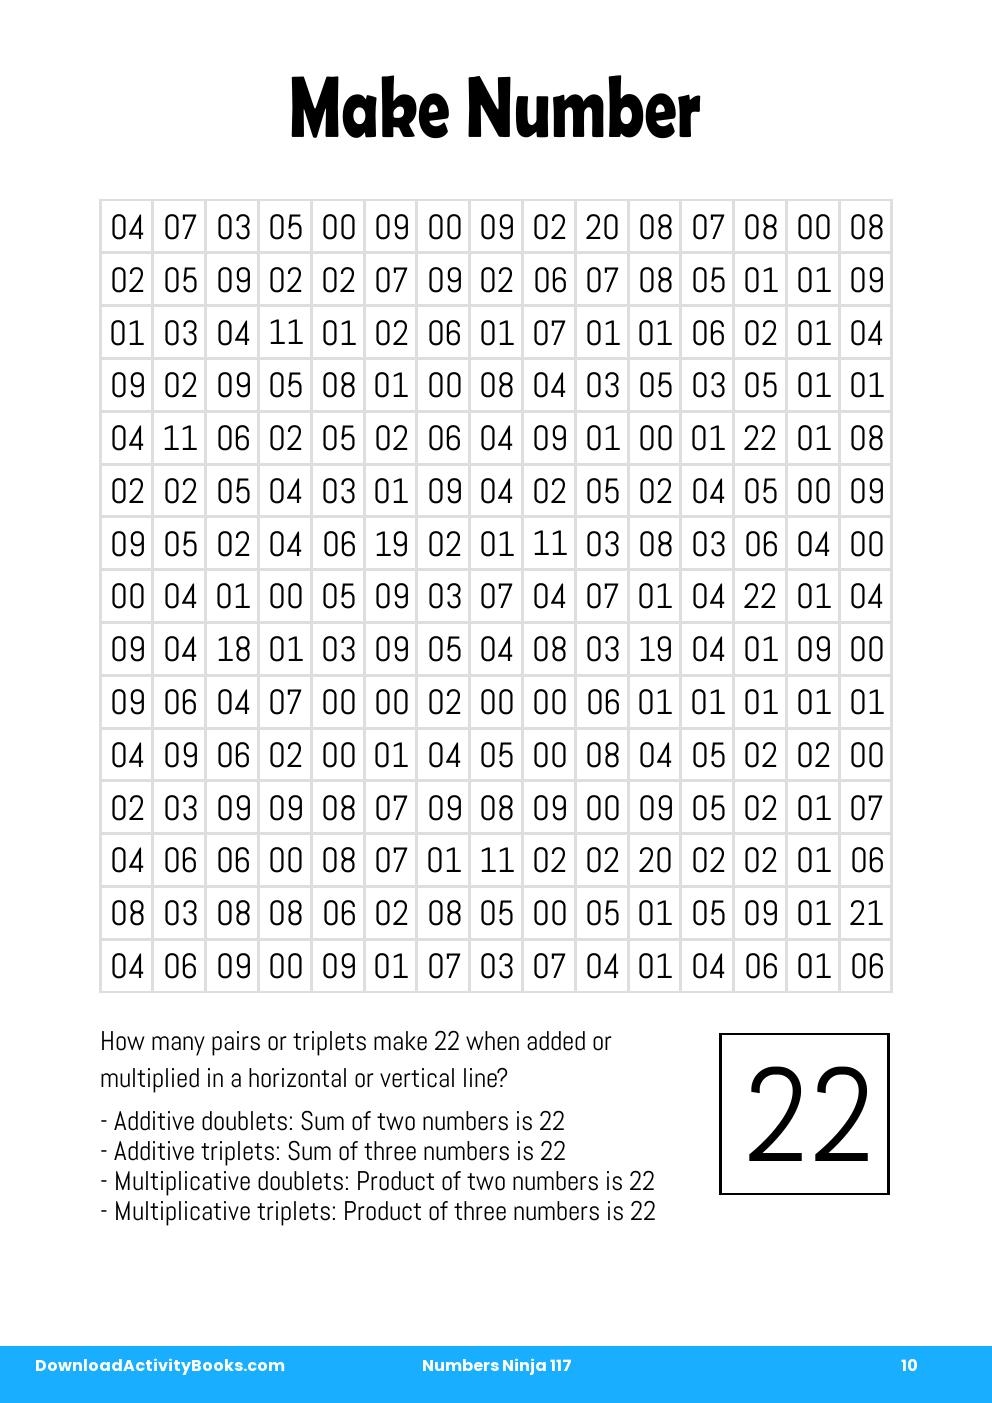 Make Number in Numbers Ninja 117